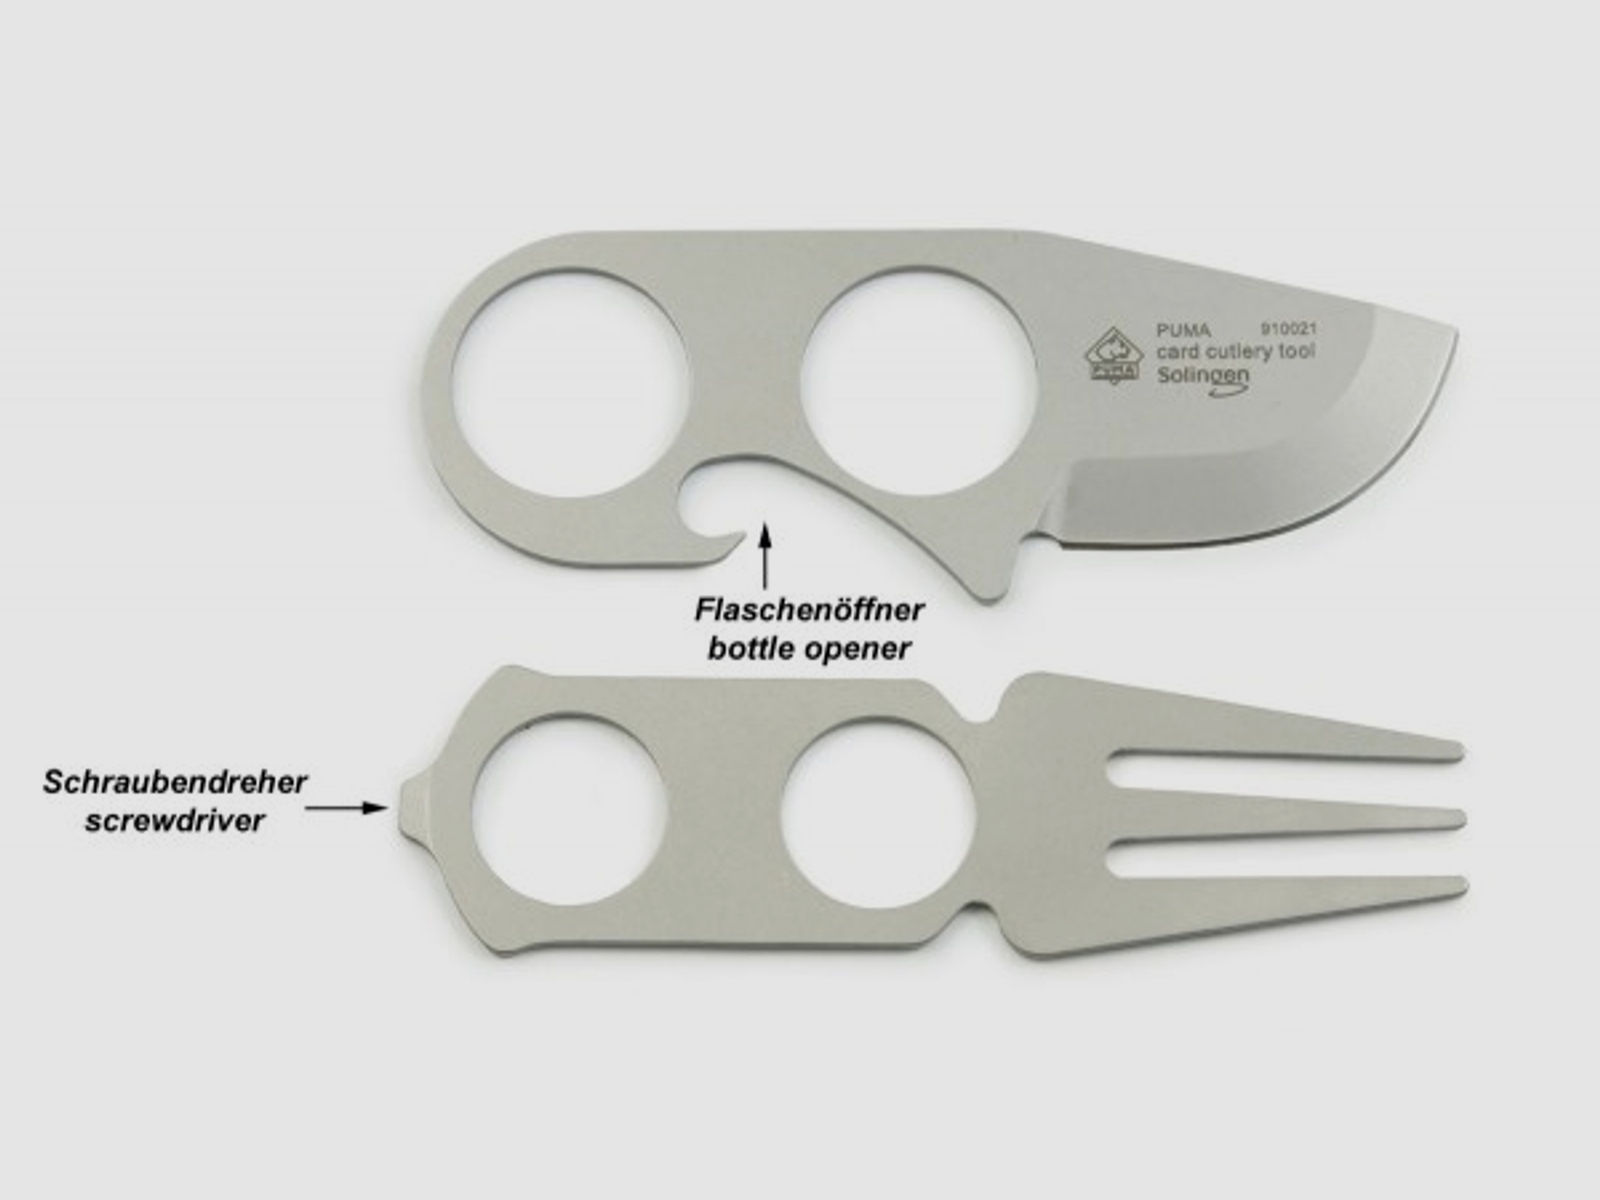 PUMA card cutlery tool